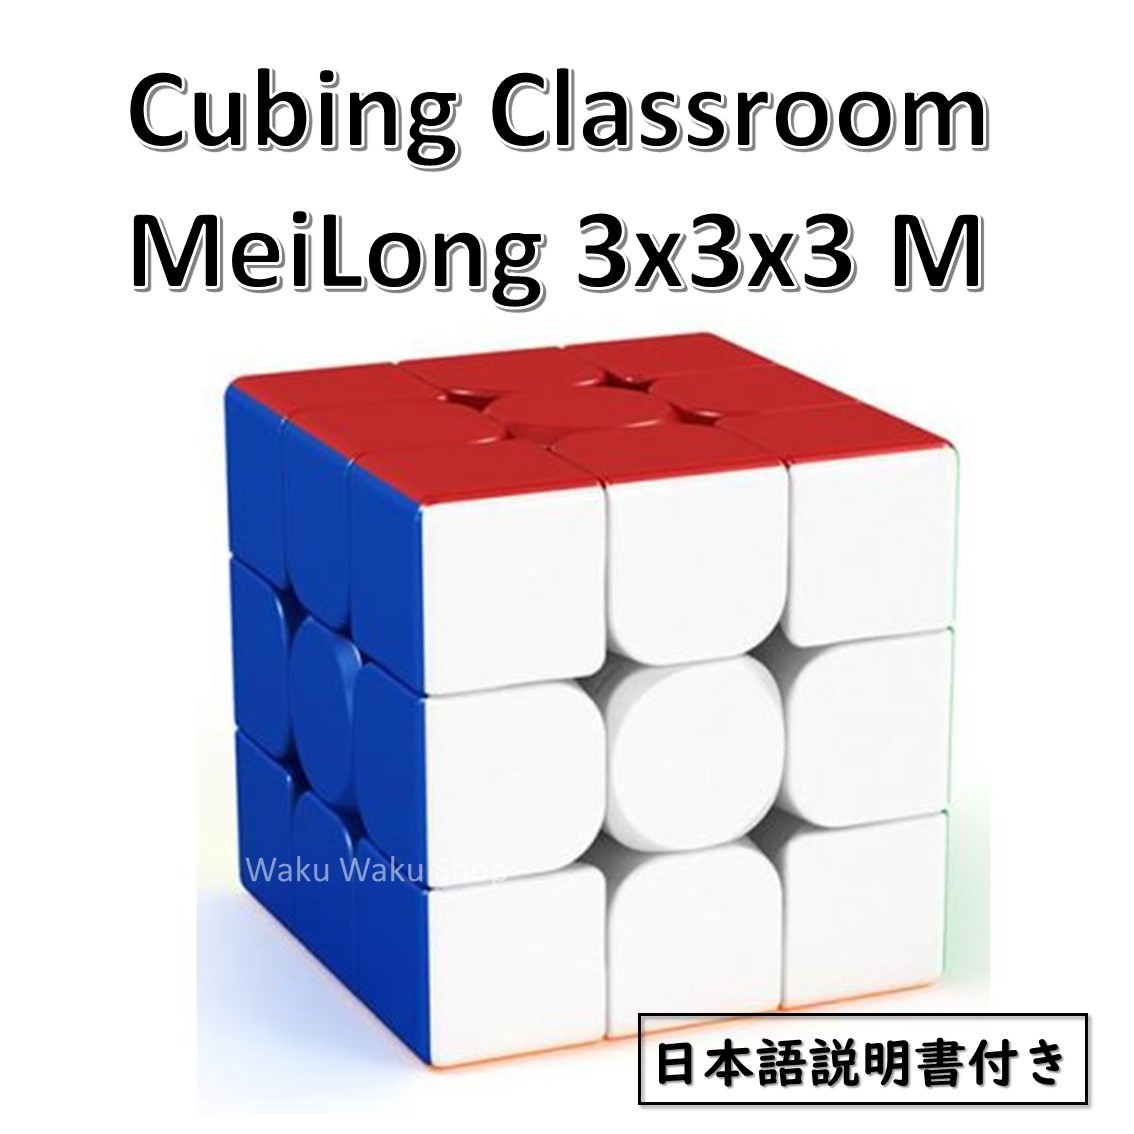  японский язык инструкция имеется надежный с гарантией стандартный импортные товары Cubing Classroom MeiLong 3x3x3 M магнит установка стикер отсутствует кубик Рубика рекомендация 